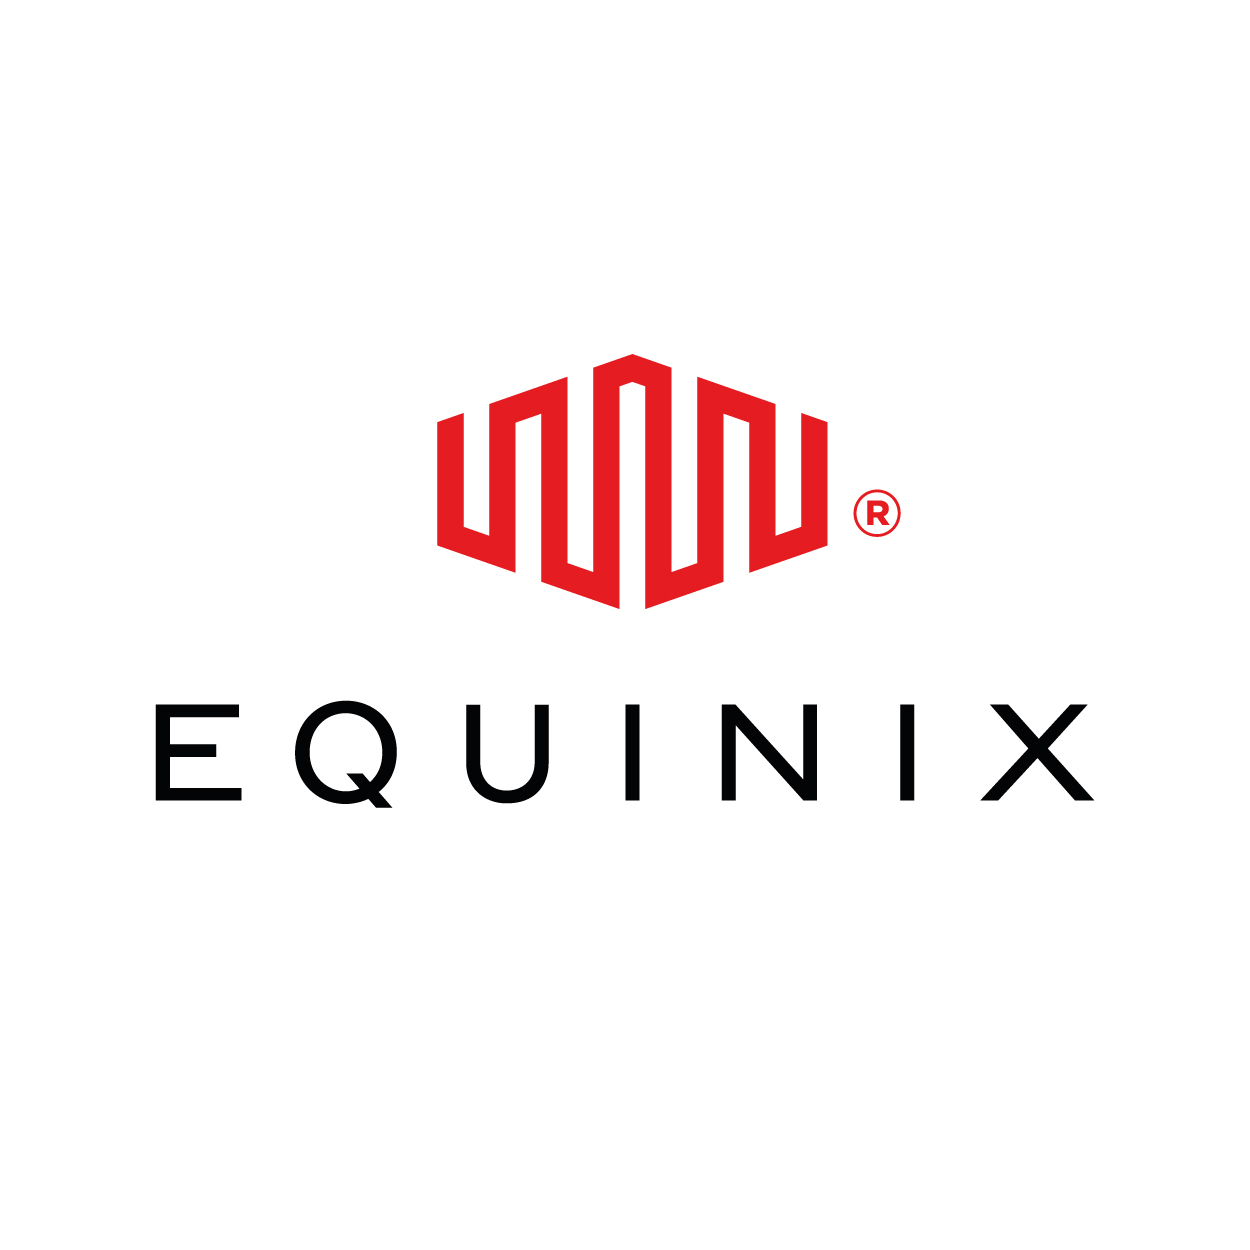 Equinix - Americas logo